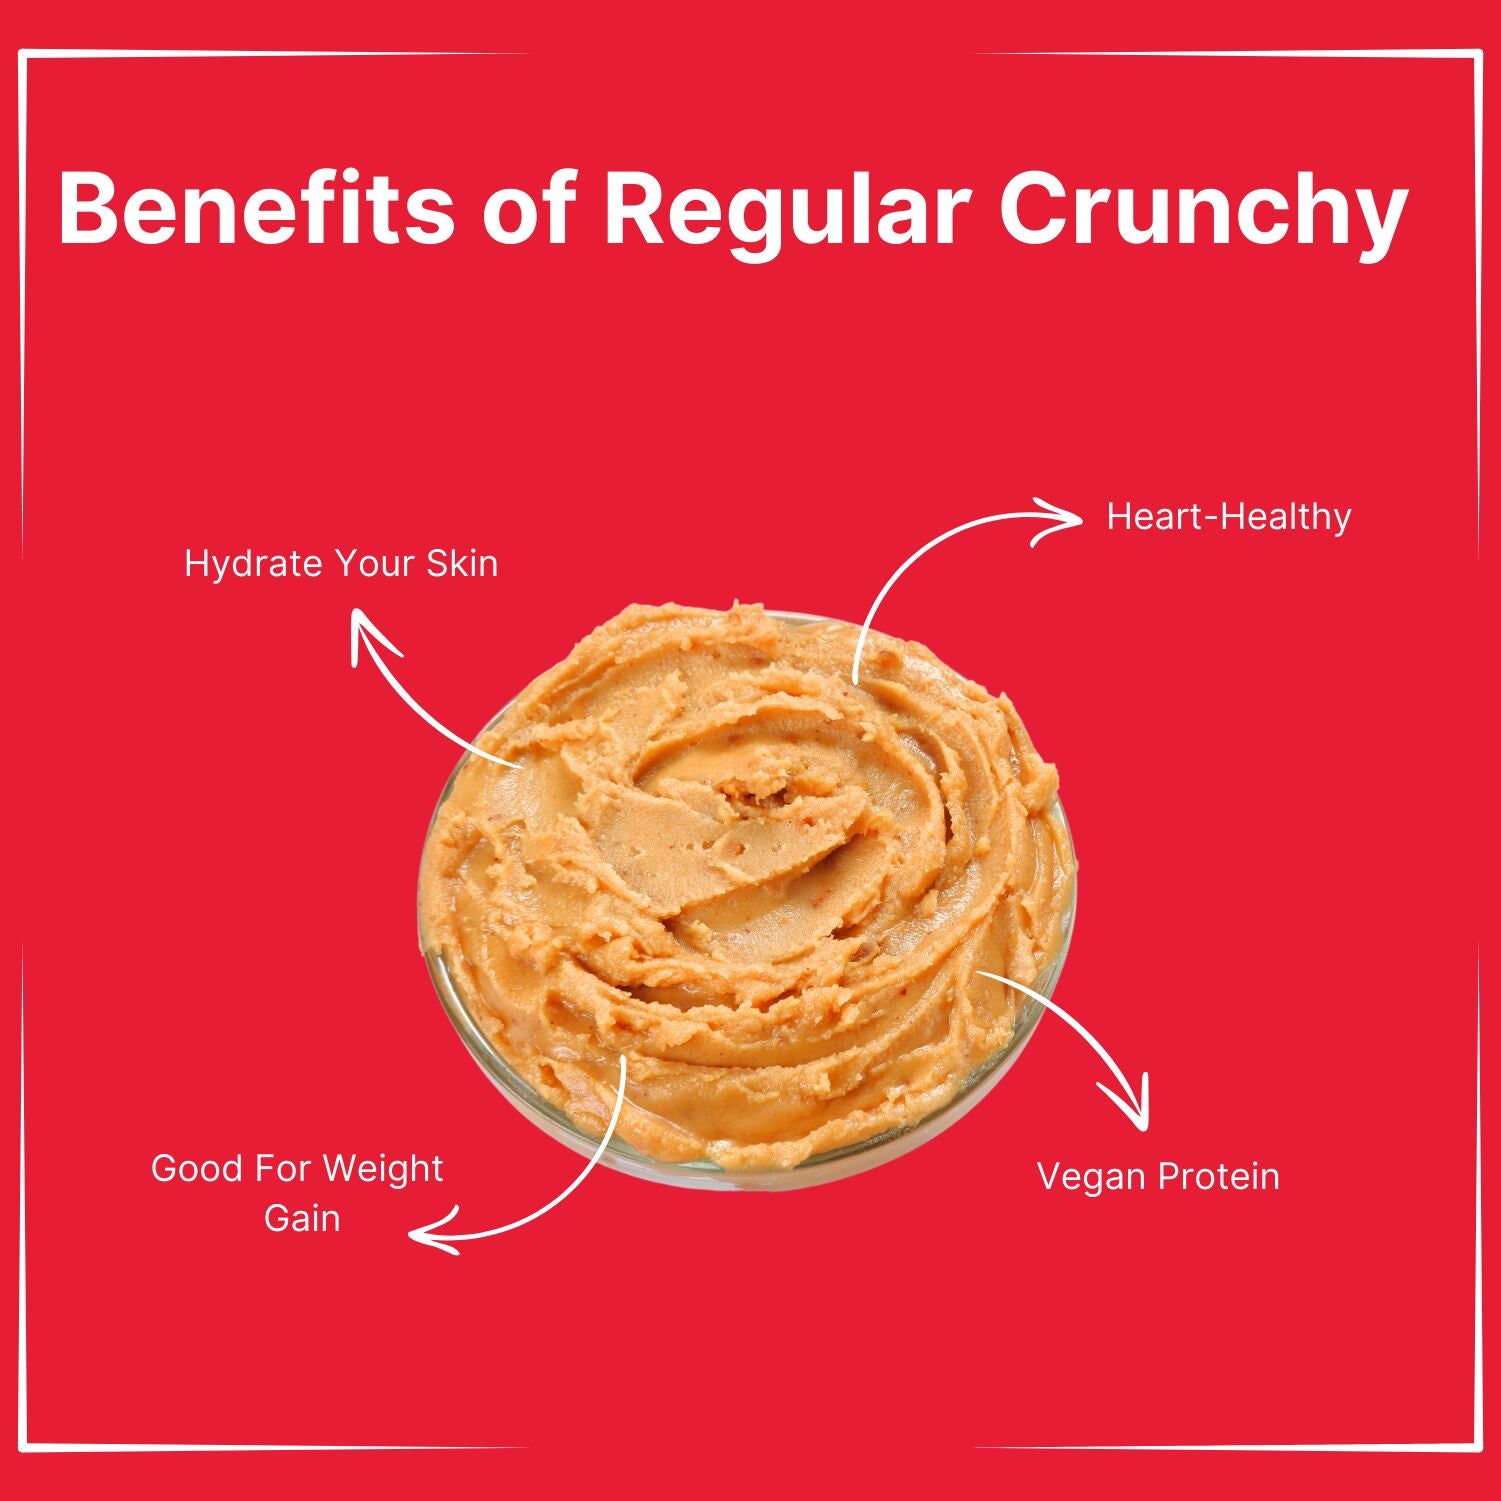 Peanut Butter Regular Crunchy - 1kg